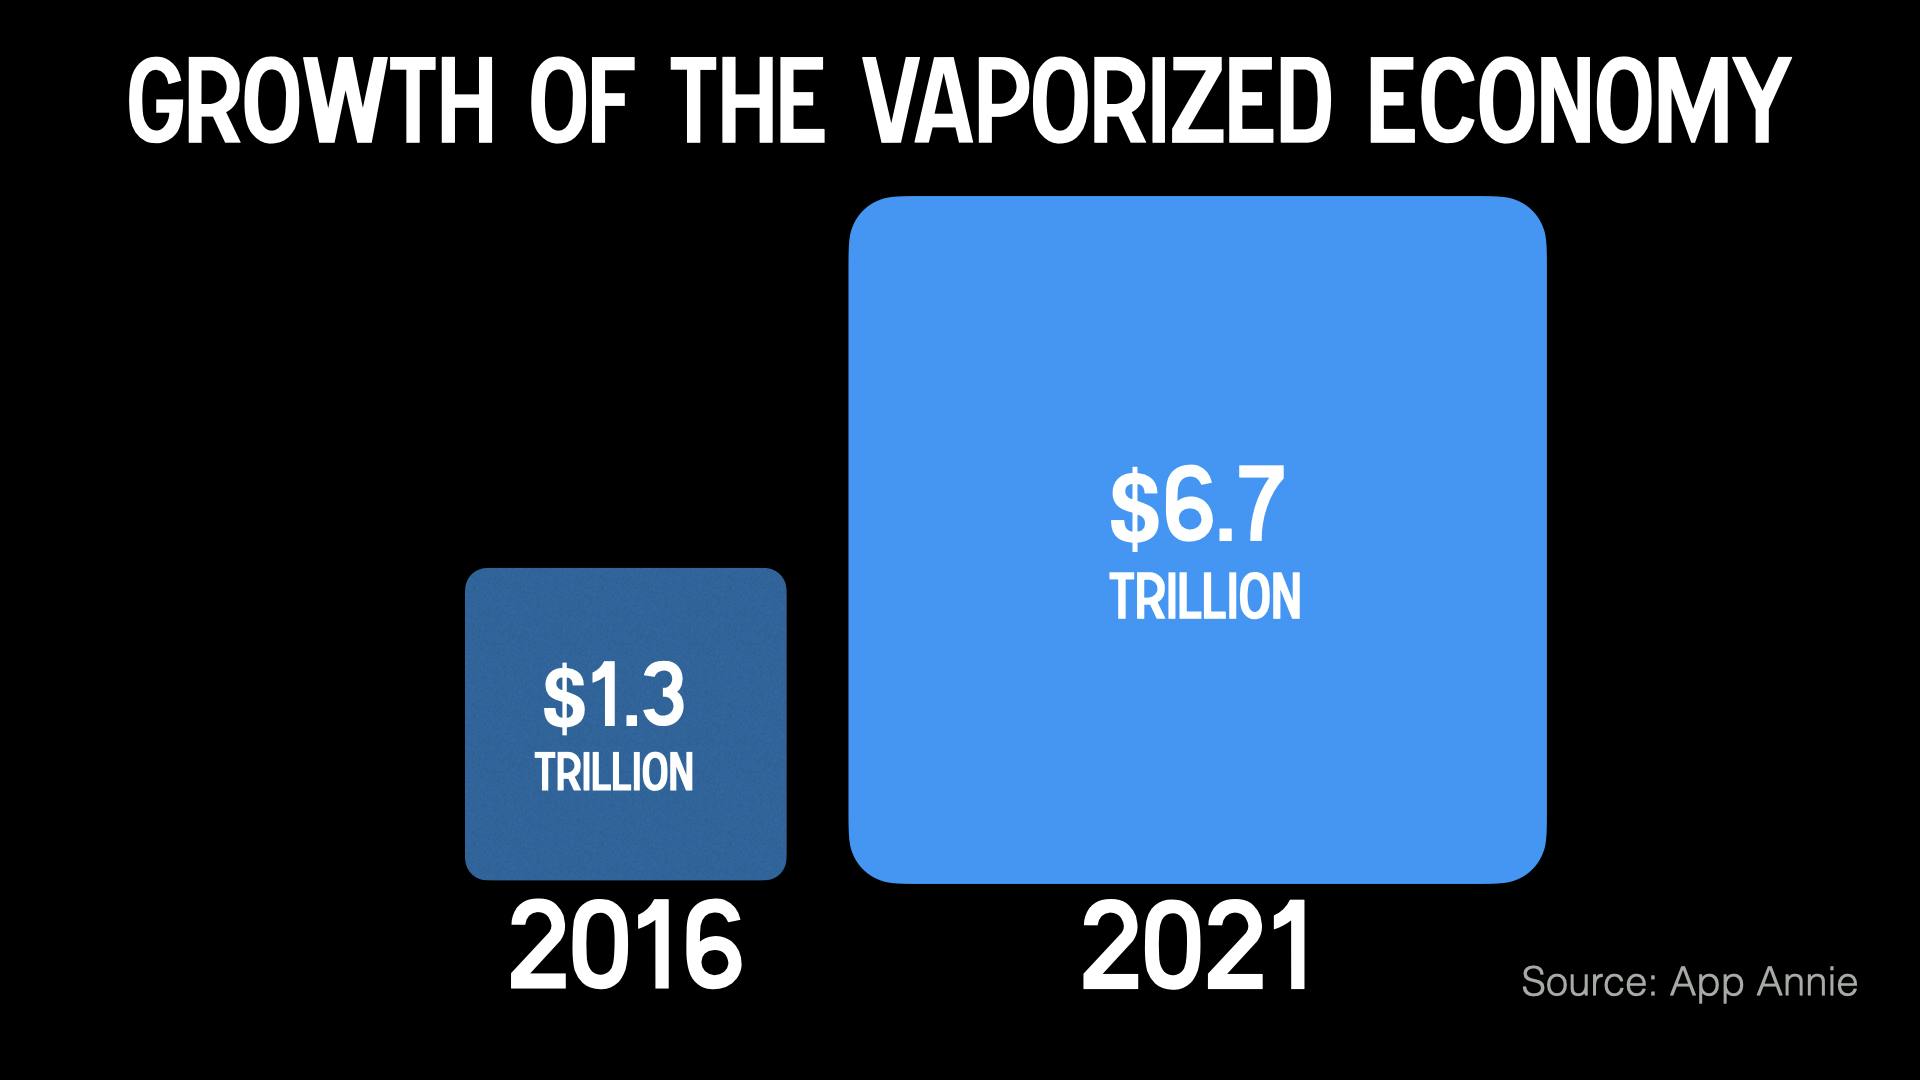 Growh of the vaporized economy visualised